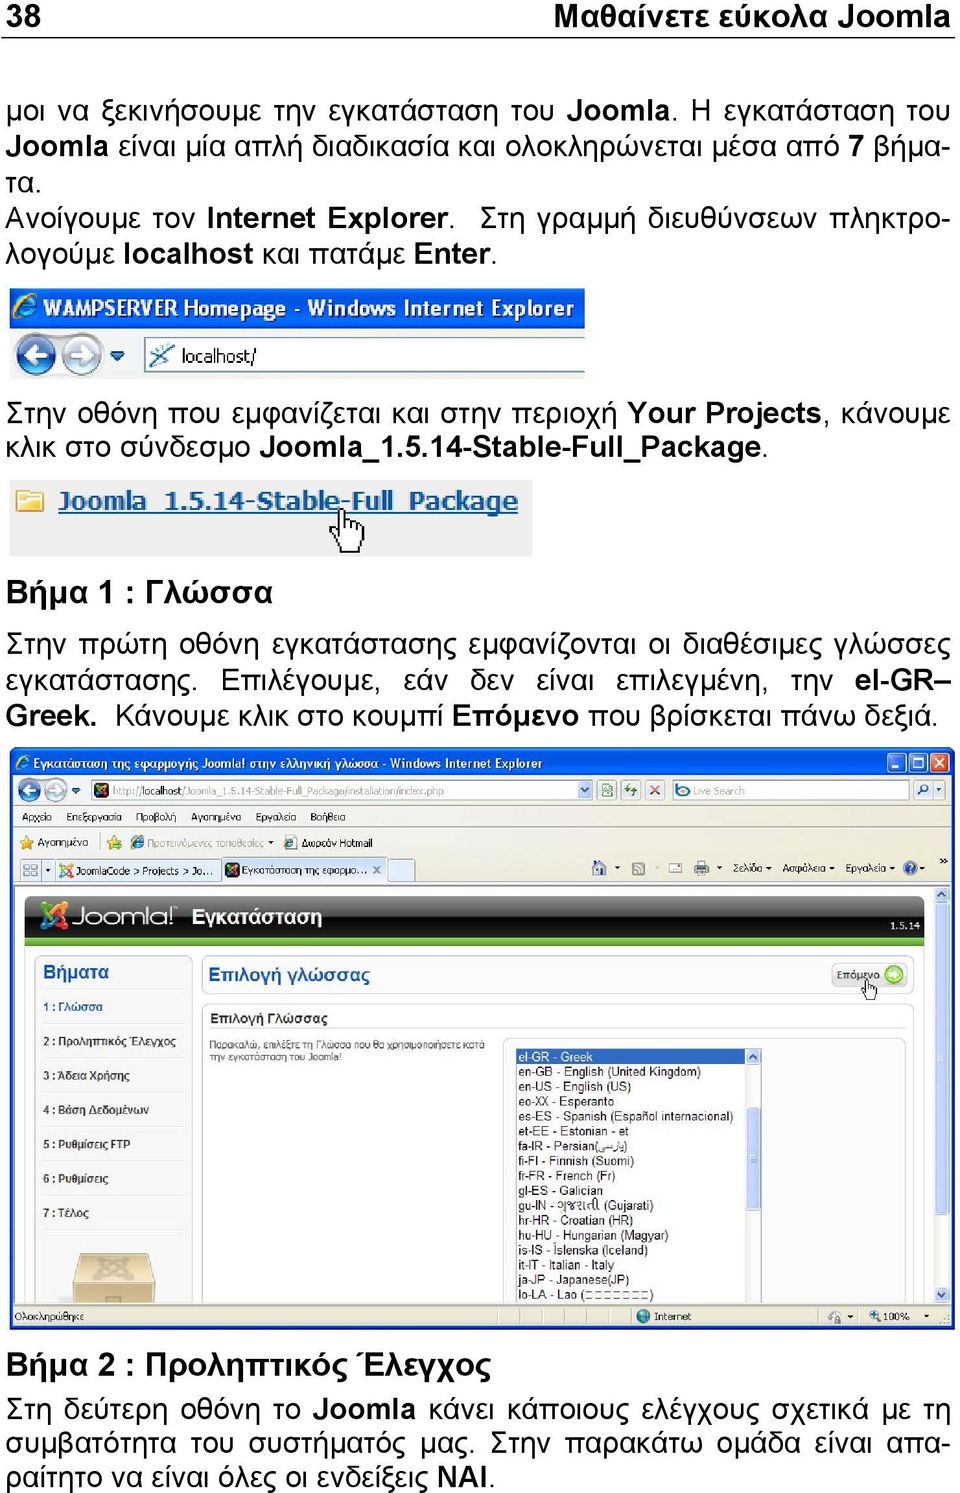 Βήµα 1 : Γλώσσα Στην πρώτη οθόνη εγκατάστασης εµφανίζονται οι διαθέσιµες γλώσσες εγκατάστασης. Επιλέγουµε, εάν δεν είναι επιλεγµένη, την el-gr Greek.